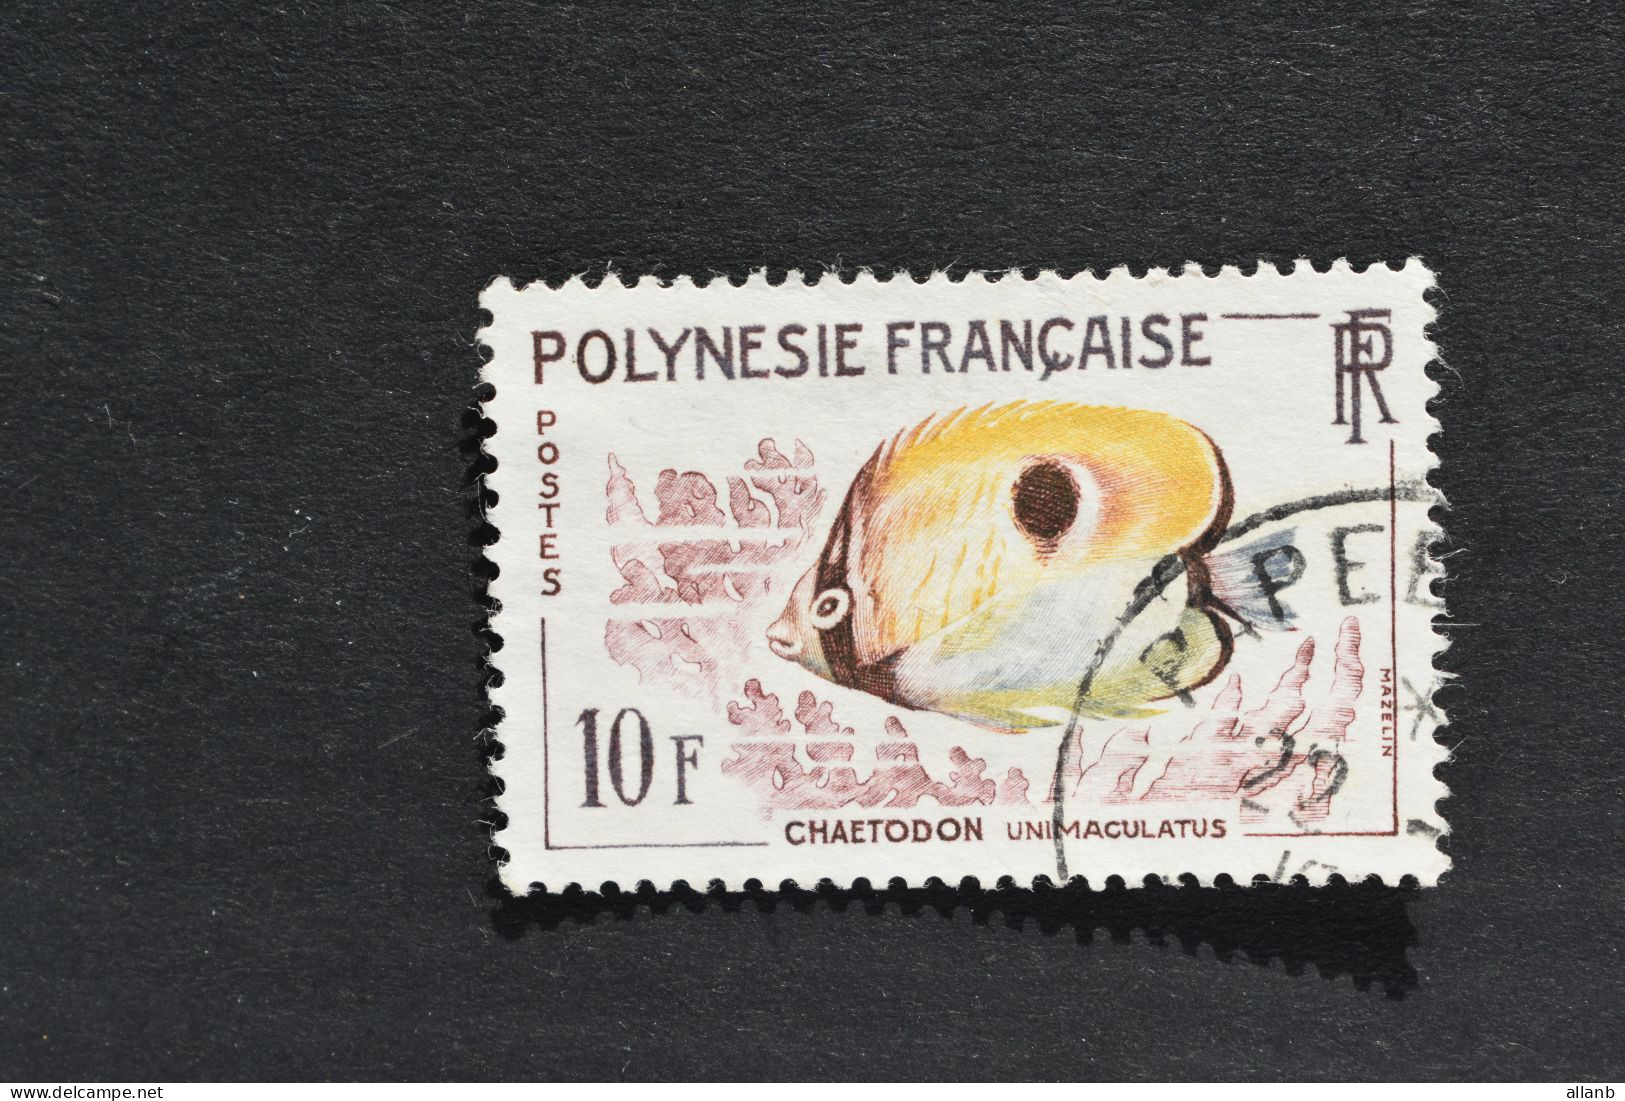 Polynésie Française - 1962 Poissons Chaetodon Unimaculatus N° 19 Oblitéré - Oblitérés